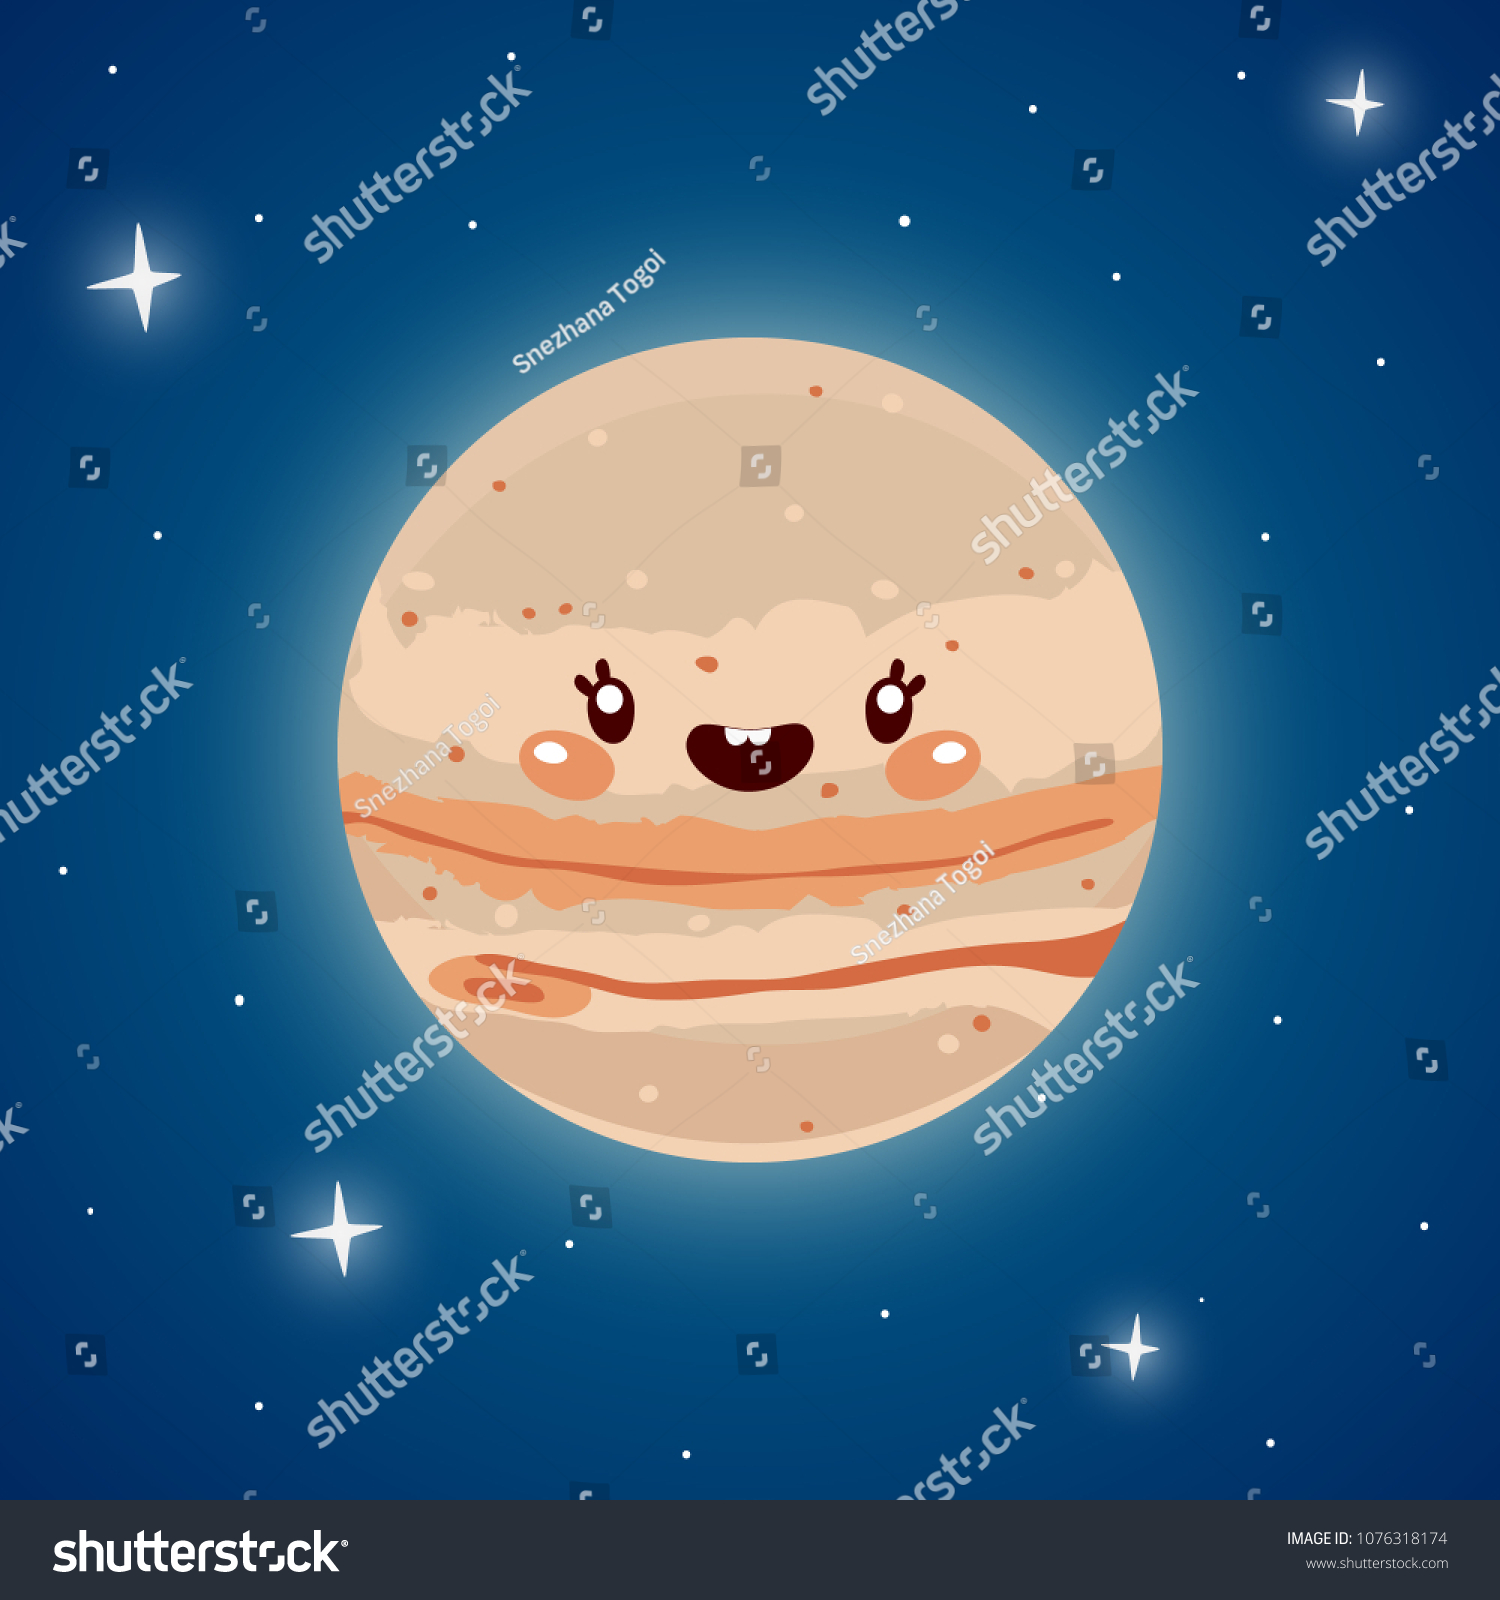 orar Adiós Escudero Cute Jupiter Space Planet Solar System: vector de stock (libre de regalías)  1076318174 | Shutterstock